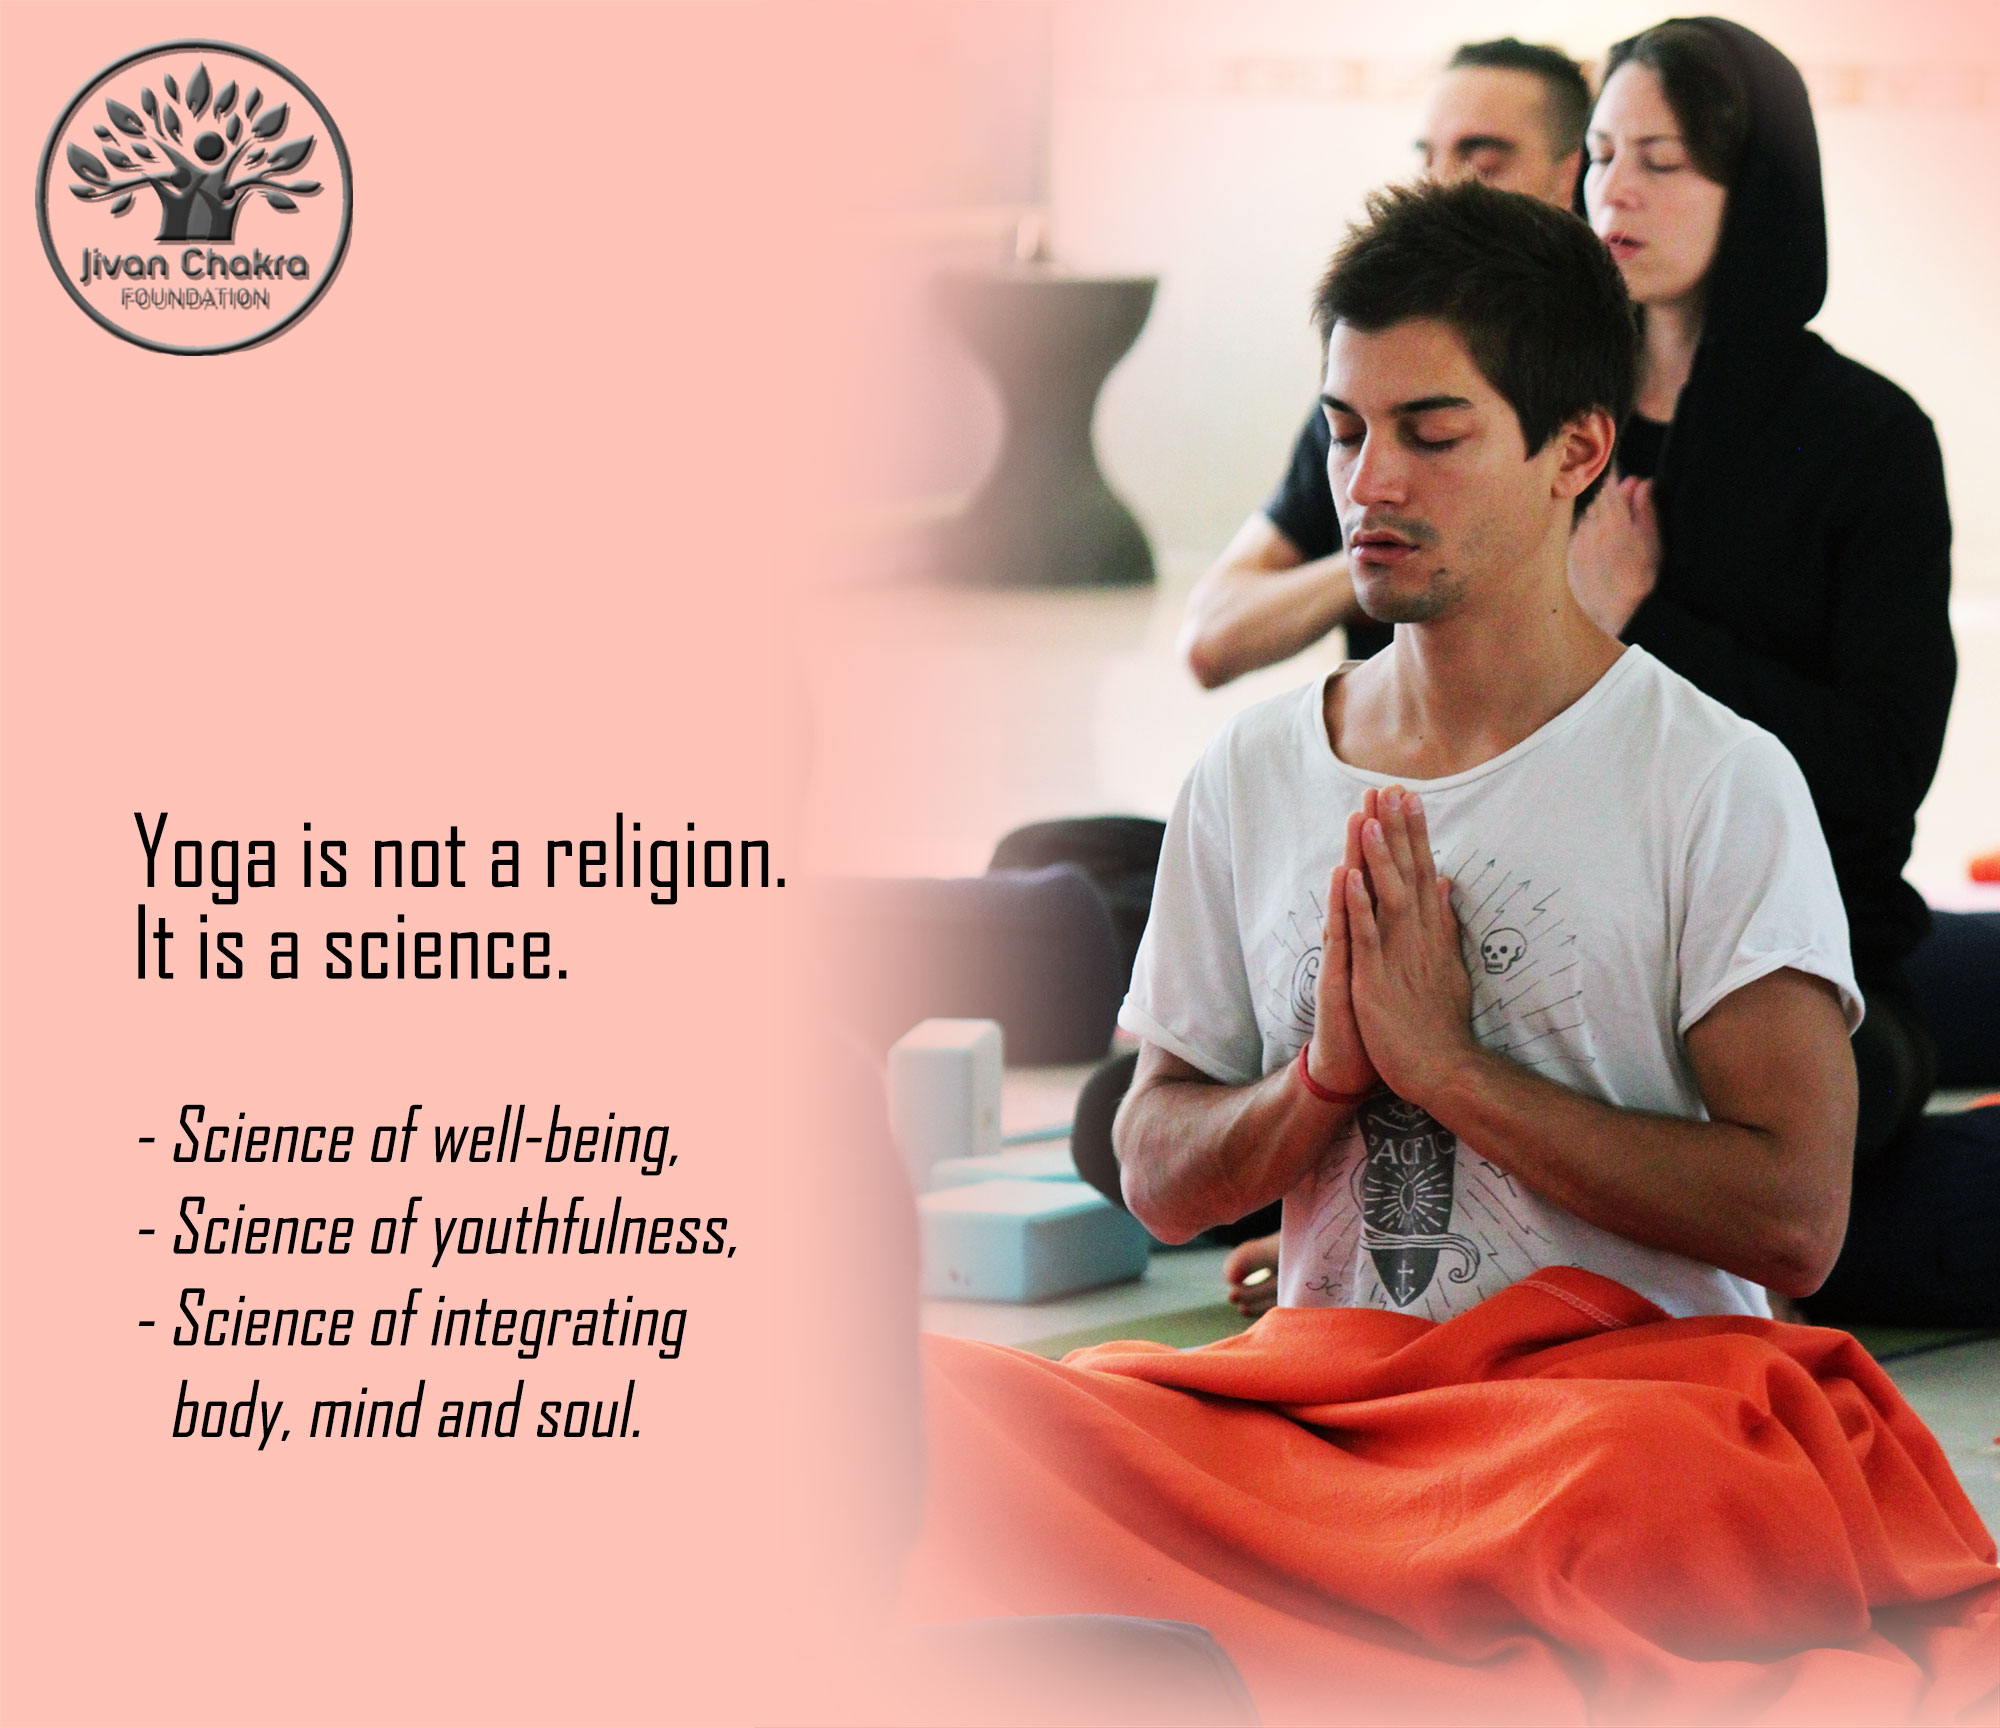 100 Hour Yoga Teacher Training in Rishikesh India